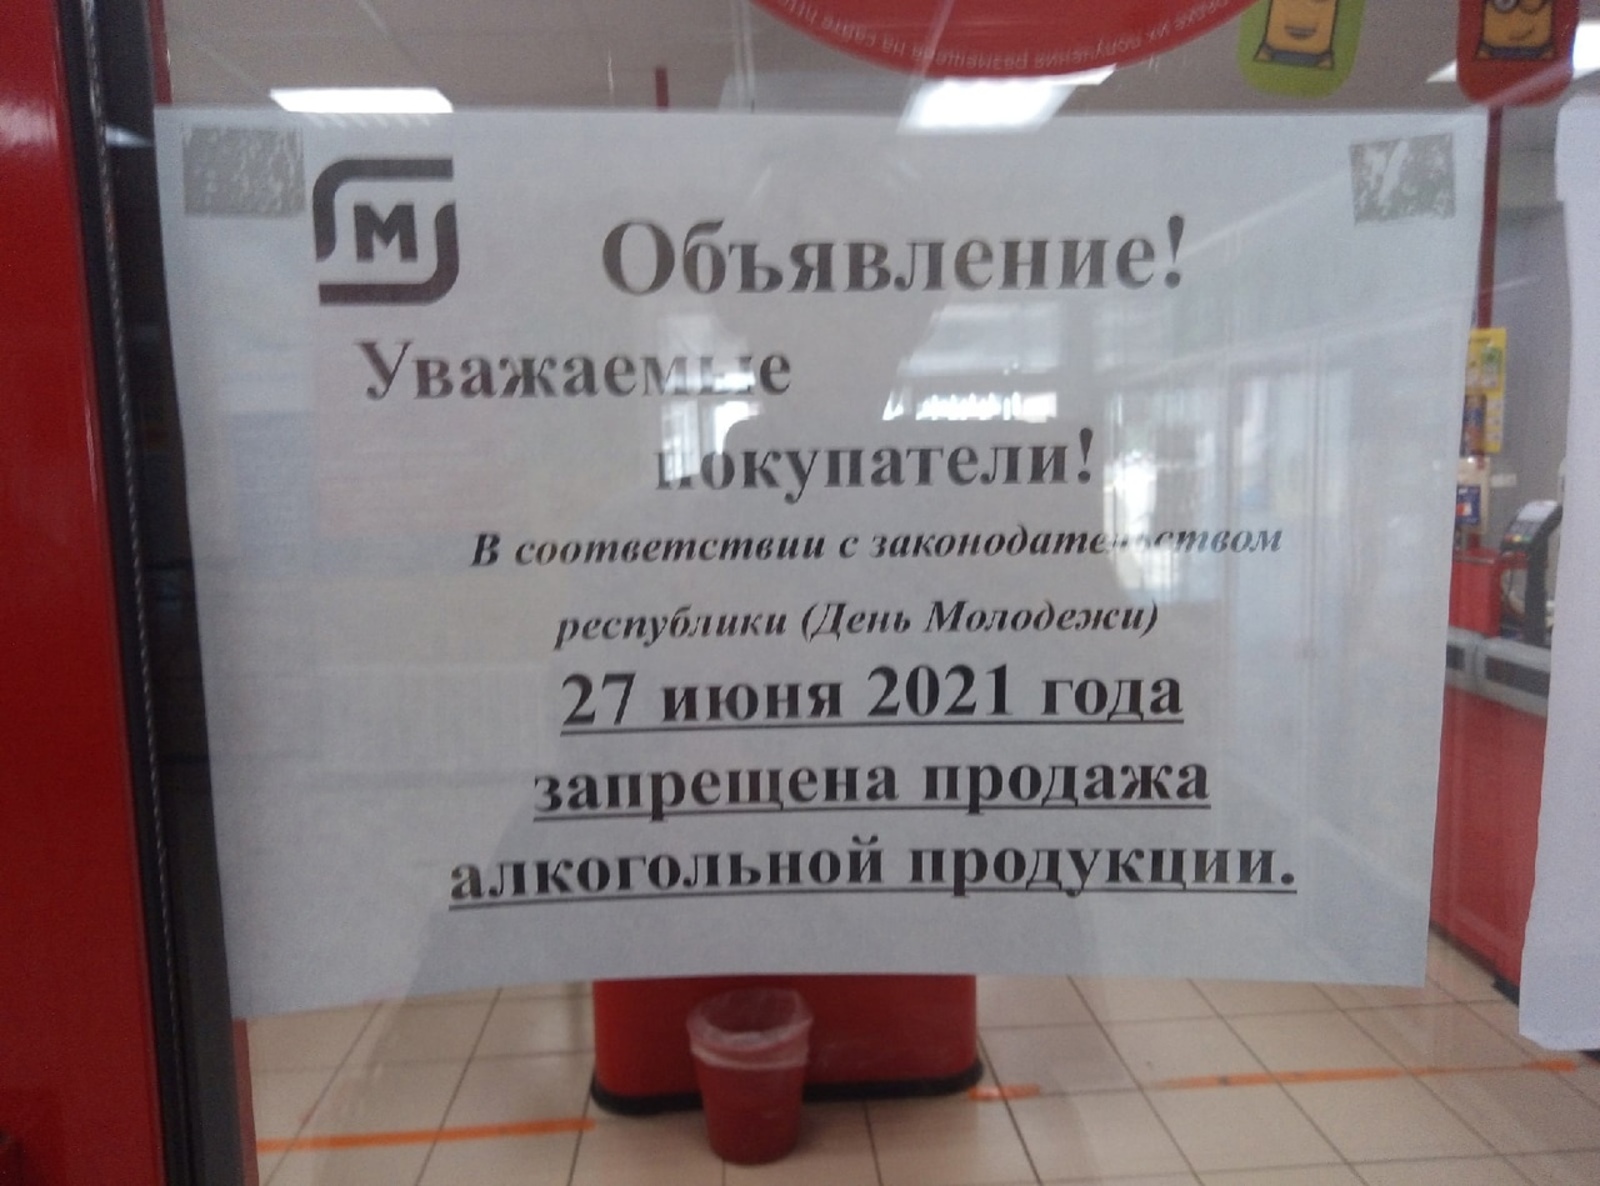 27 июня в Башкирии запрещена продажа алкоголя